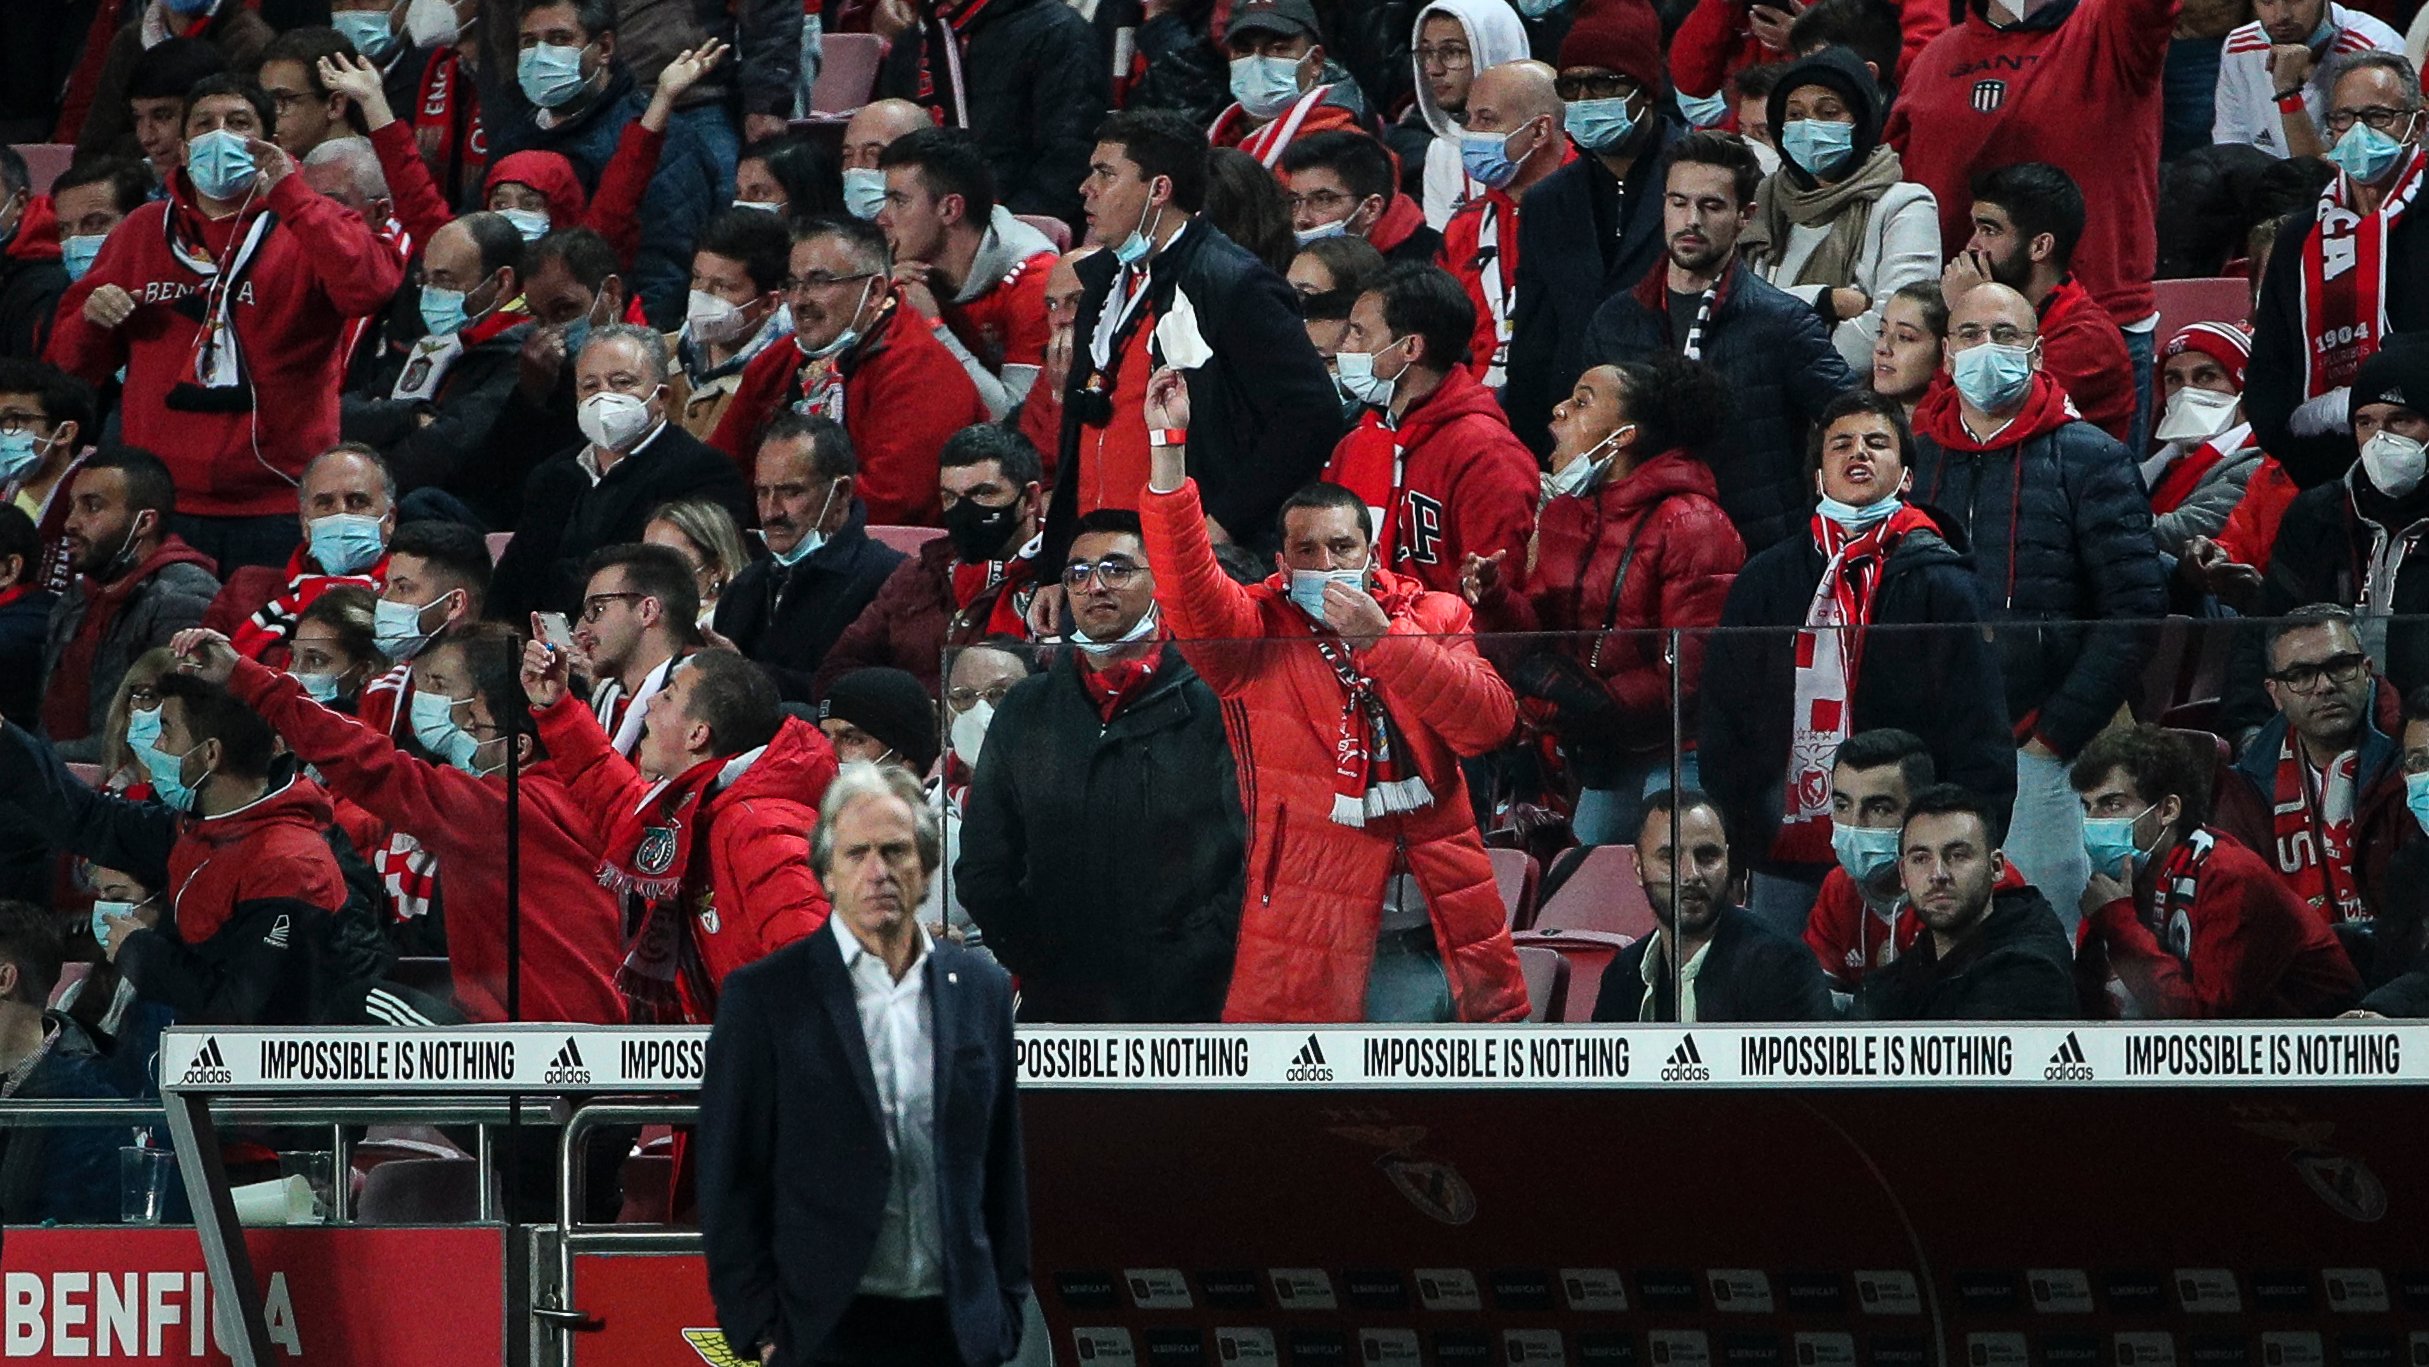 Adeptos do Benfica mostram lenços brancos a Jorge Jesus durante o jogo entre o Sport Lisboa e Benfica e o Sporting Clube de Portugal no estádio da Luz, a contar para a 13ª jornada da Primeira Liga 2021/22. Lisboa, 03 de Dezembro de 2021. FILIPE AMORIM/OBSERVADOR